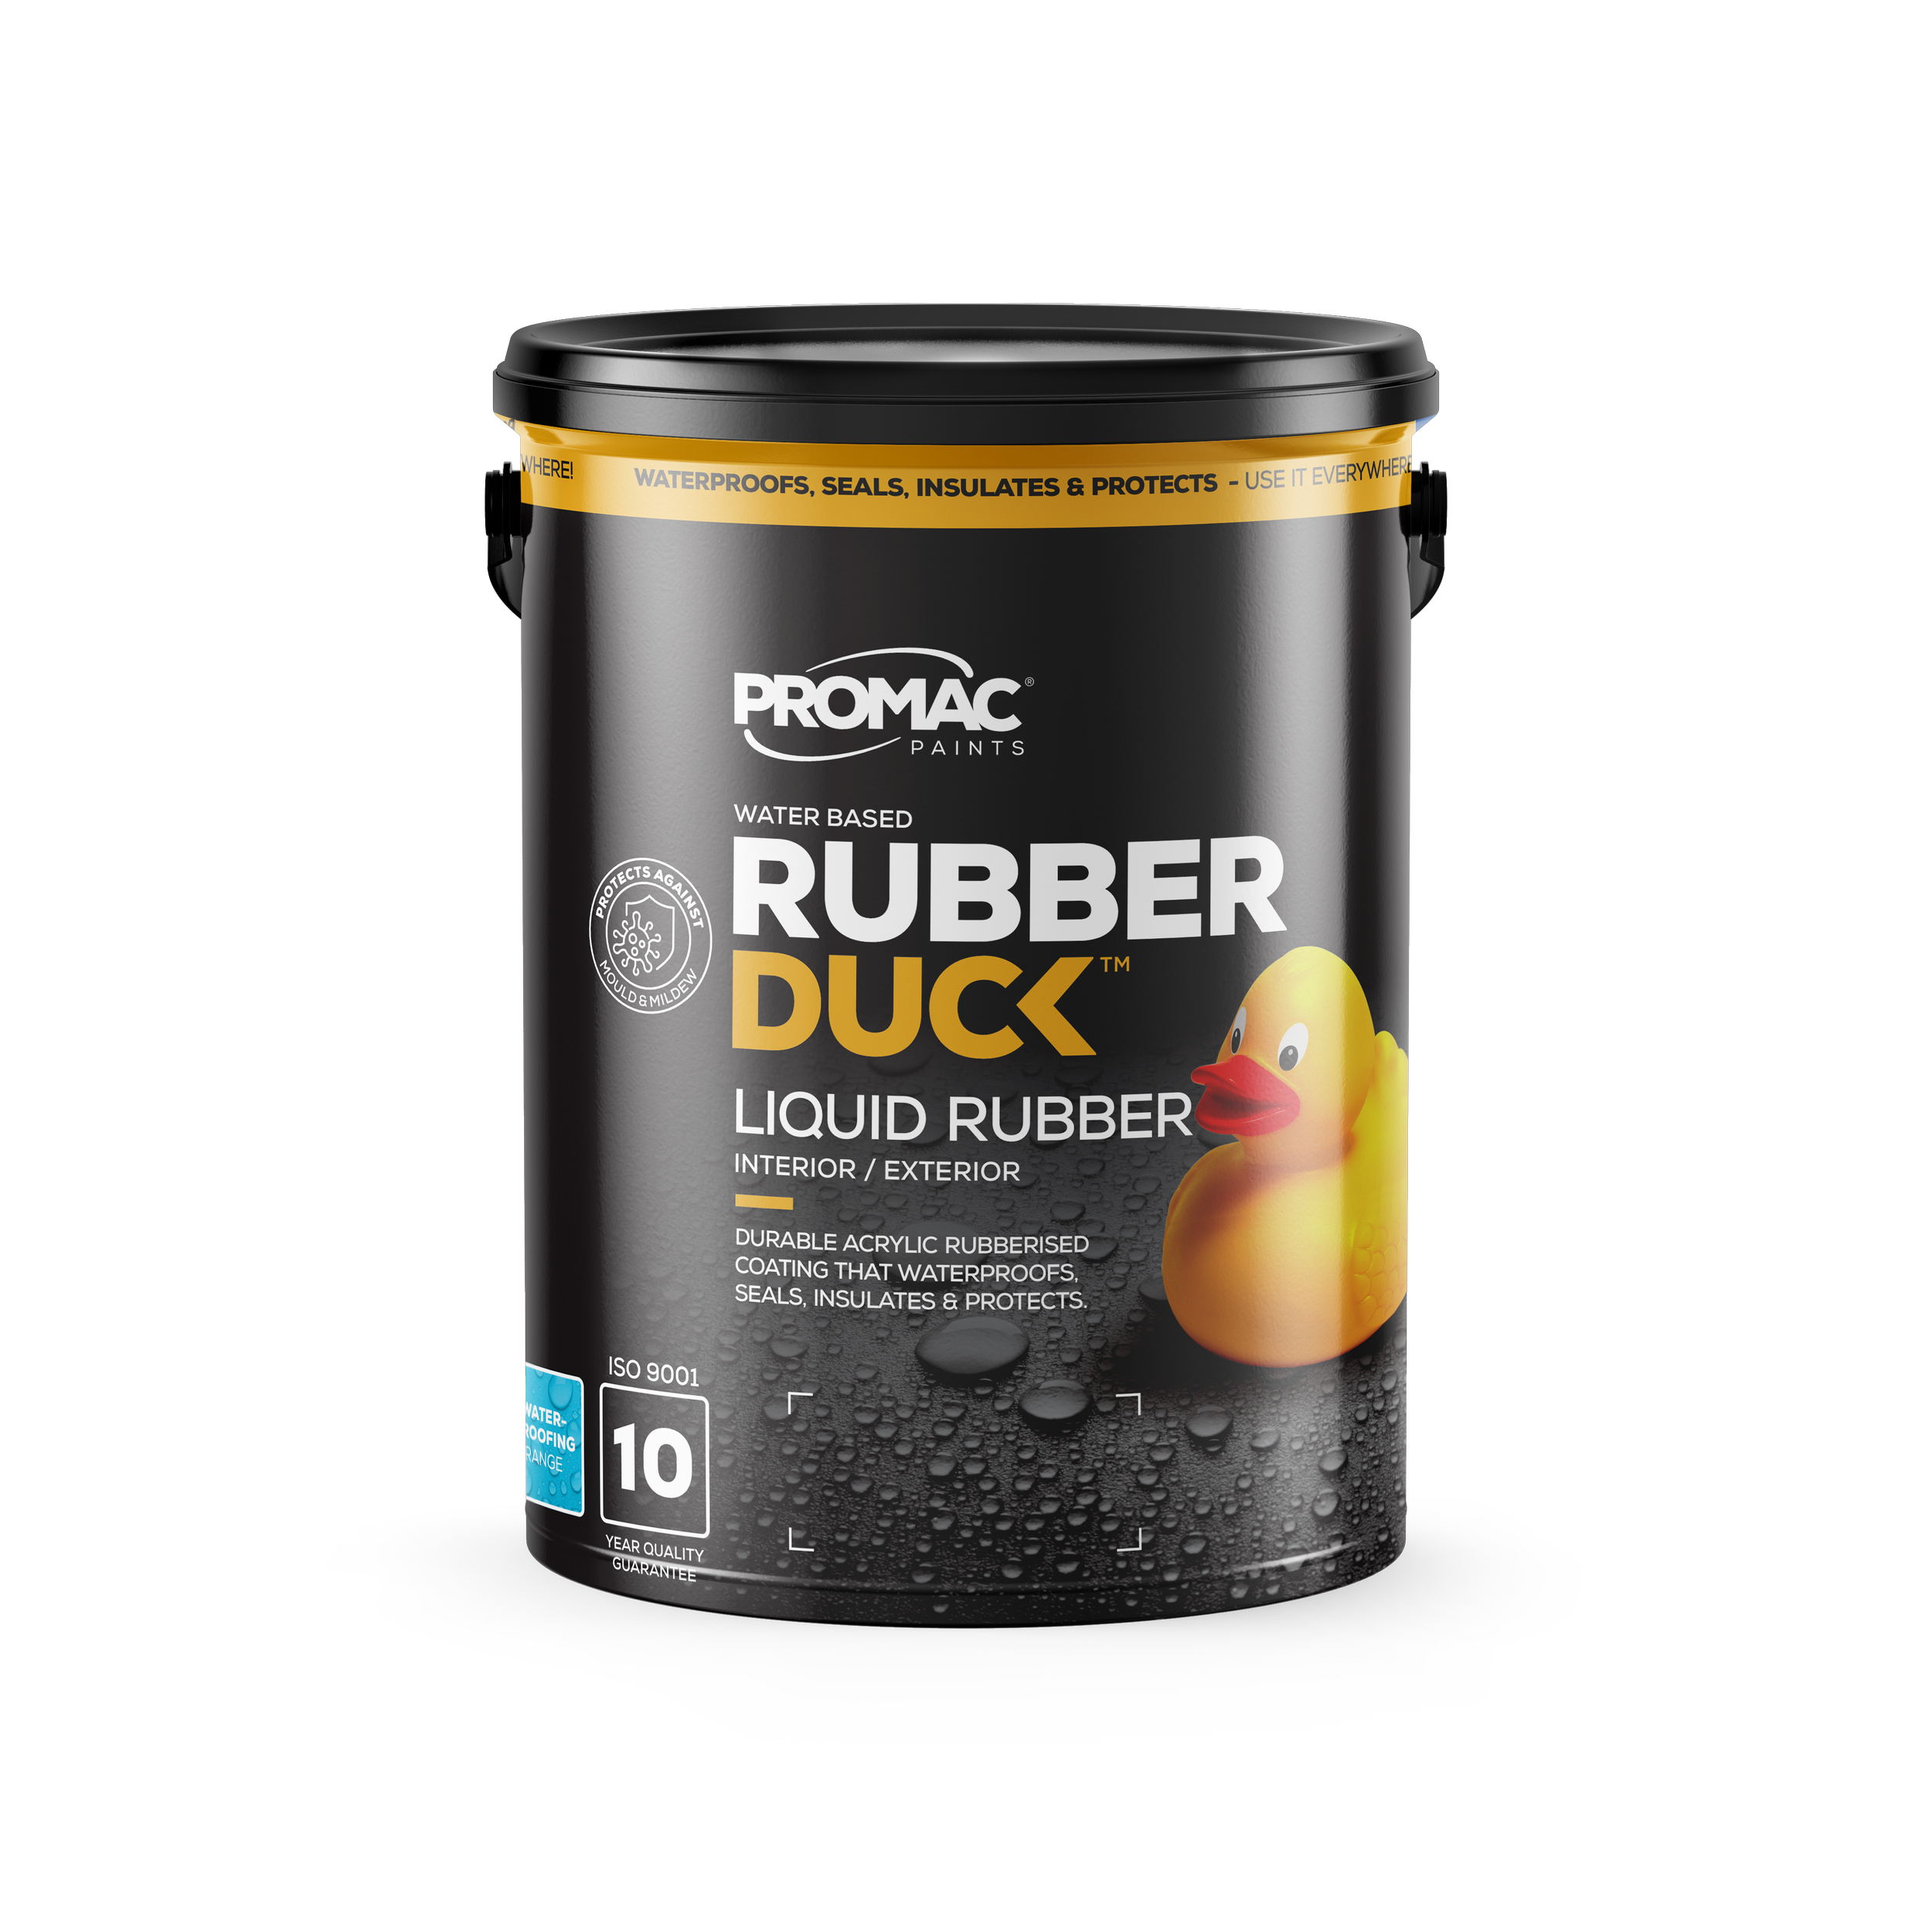 RD Liquid Rubber — Promac Paints